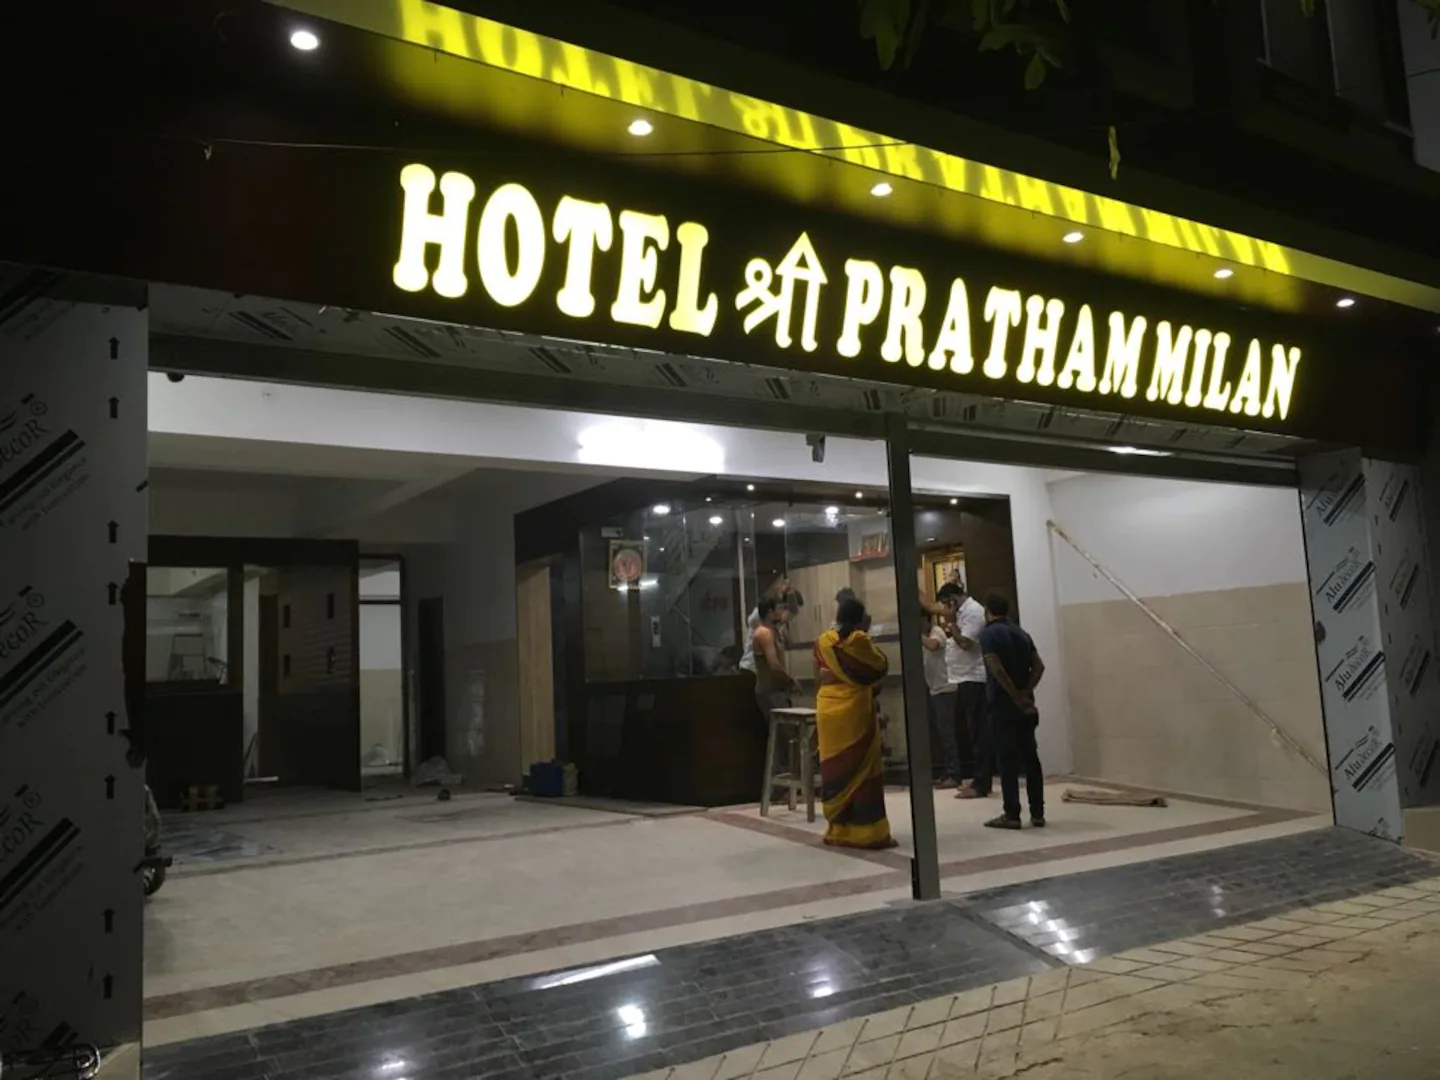 Hotel Shree Pratham Milan